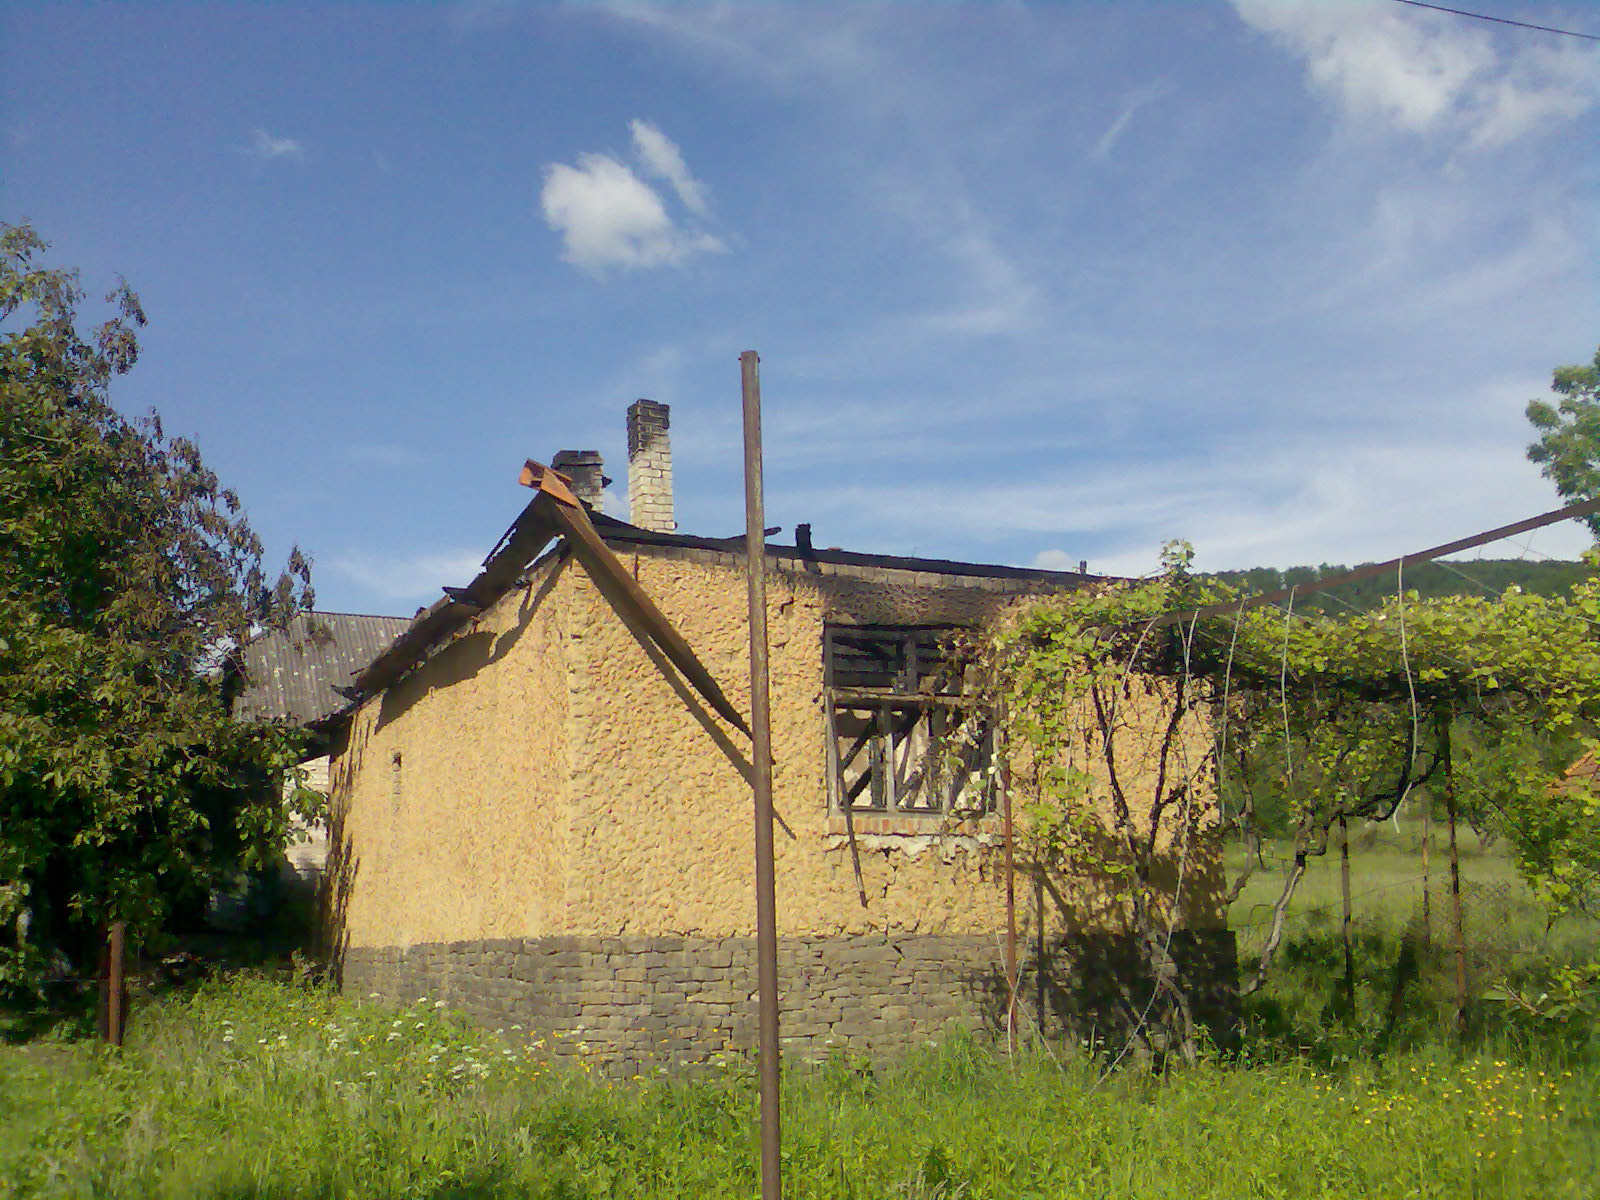 15 травня о 08:15 до іршавських рятувальників надійшло повідомлення про пожежу в житловому будинку, що в селі Арданово. 